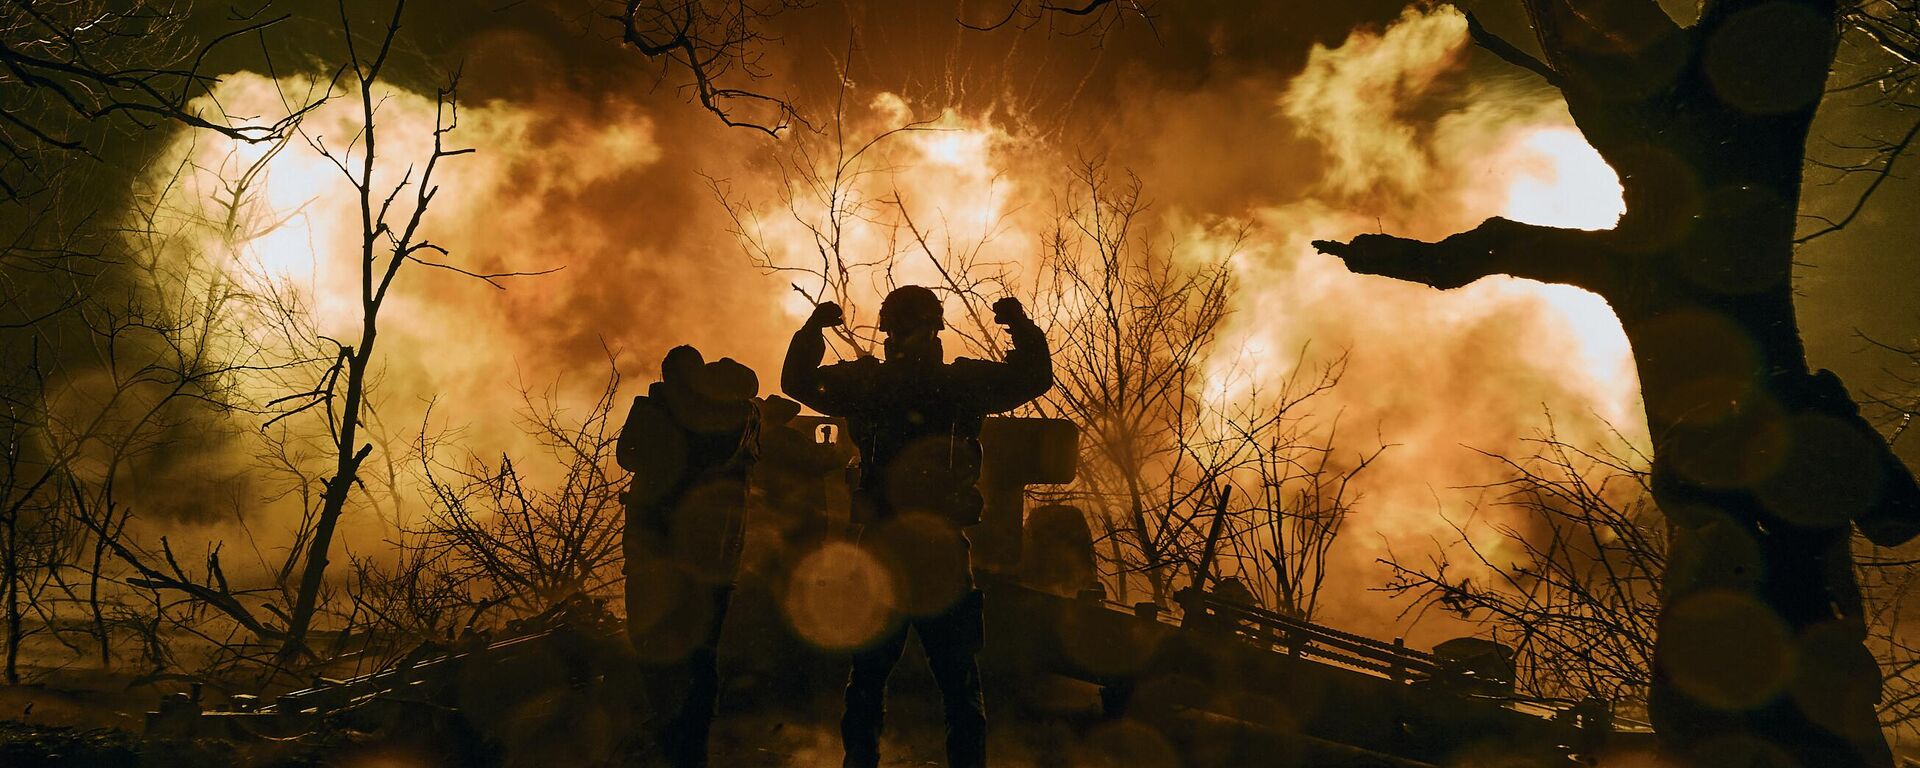  جنود أوكرانيون يطلقون نيران المدفعية على مواقع روسية بالقرب من باخموت في منطقة دونيتسك، 20 نوفمبر 2022.  - سبوتنيك عربي, 1920, 17.03.2023